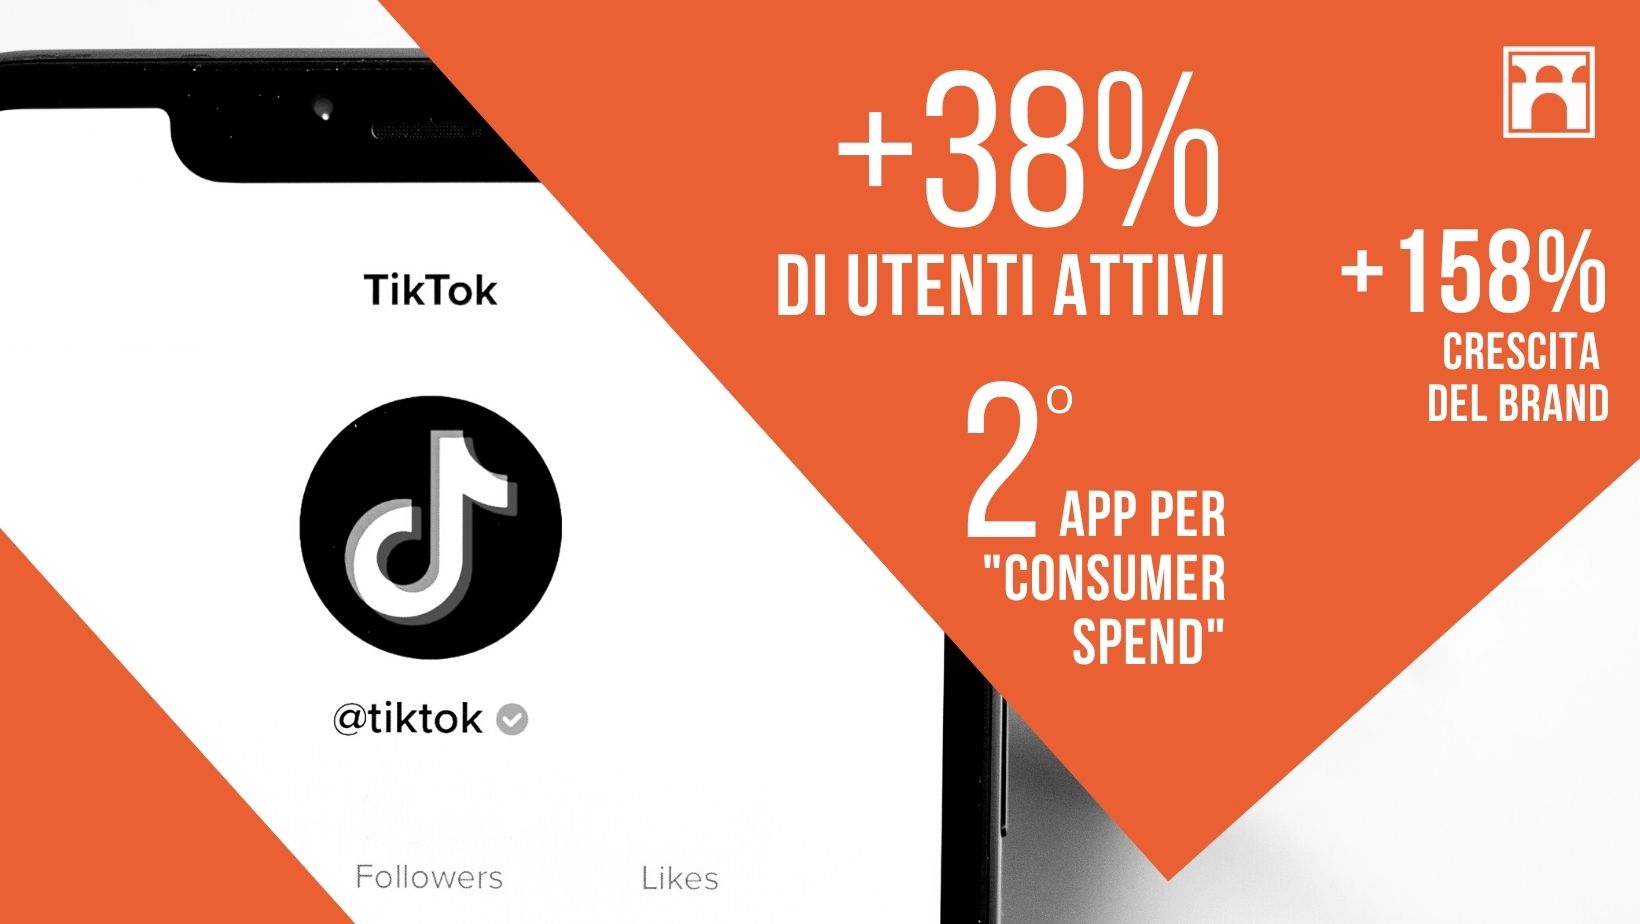 TIKTOK Per Il Tuo Business_+158% Di Crescita Del Brand.jpg